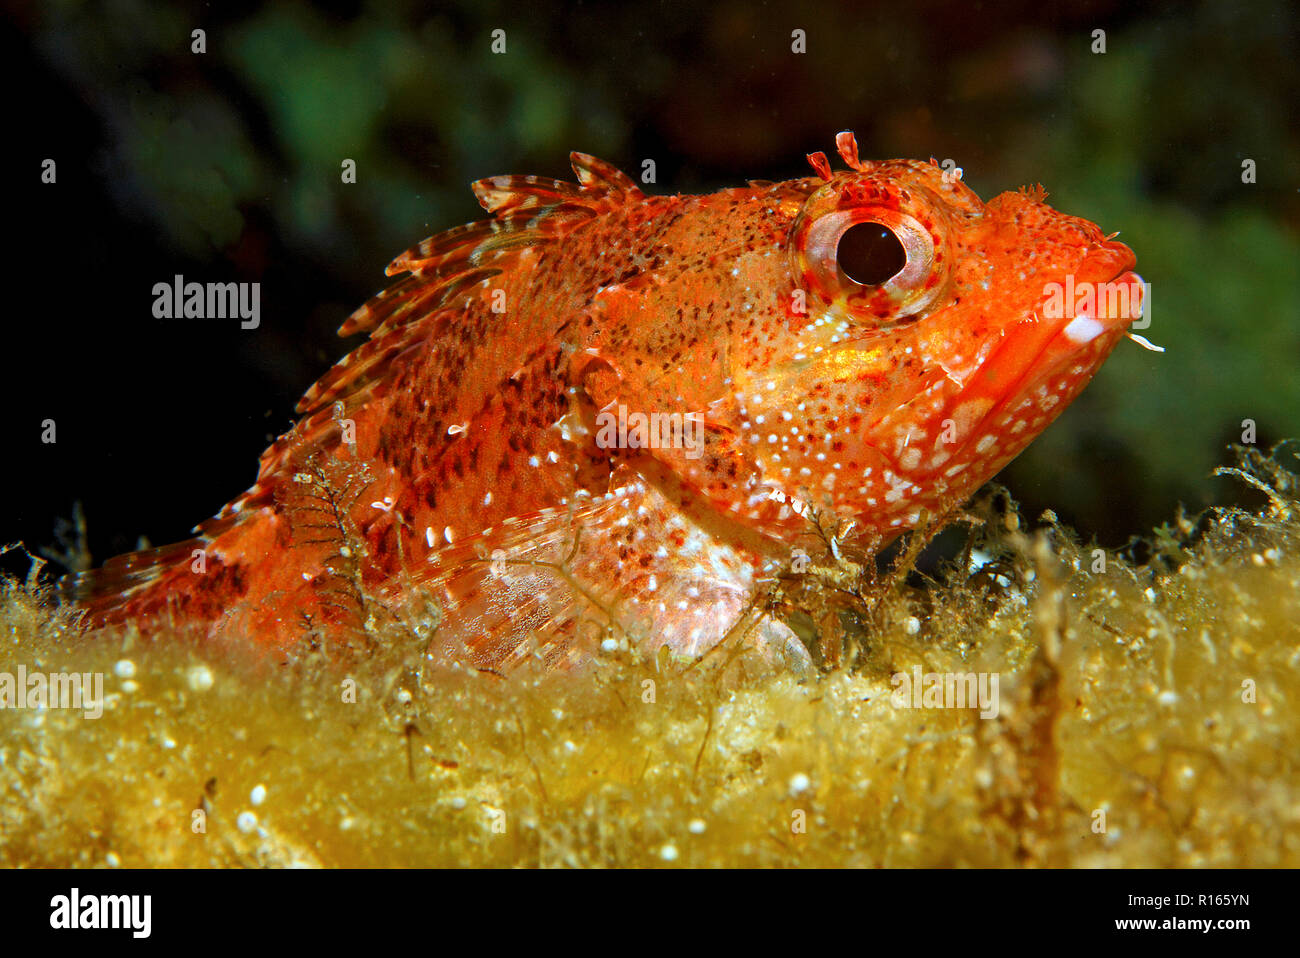 Kleiner Roter Dachenkopf (Scorpaena notata), Zante, Grèce | Petit poisson scorpion rouge (Scorpaena notata), l'île de Zakynthos, Grèce Banque D'Images